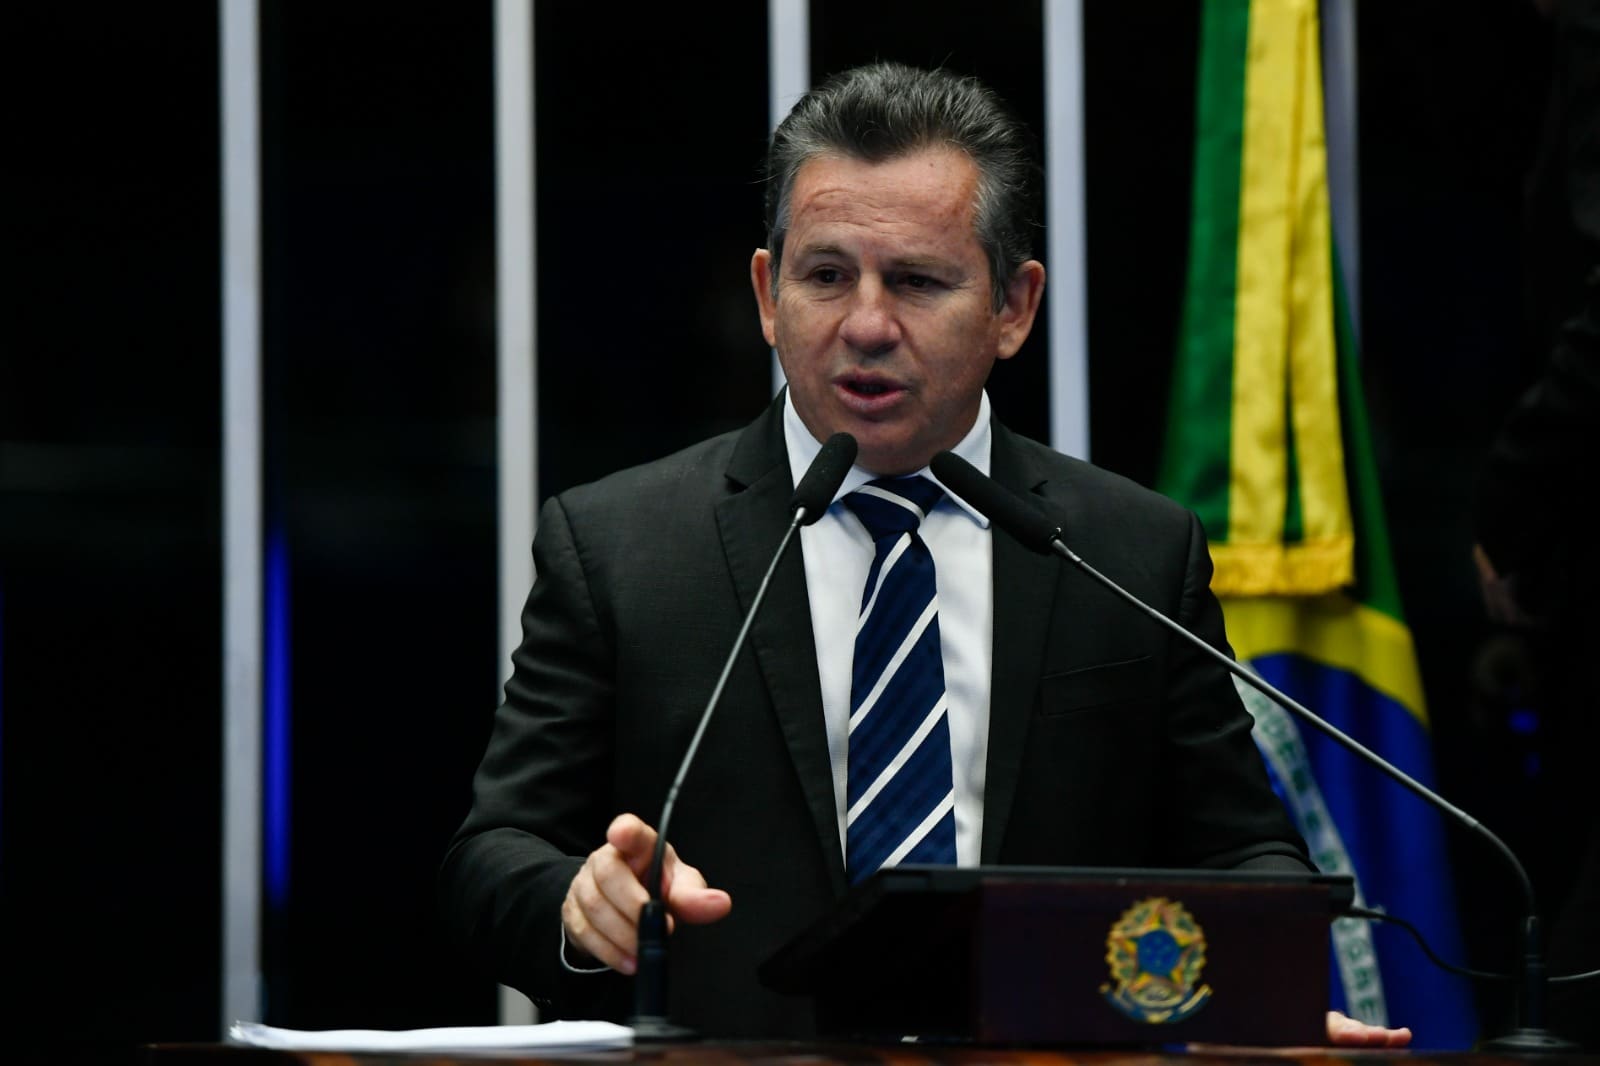 Governadores reforçam críticas de Caiado à Reforma Tributária no Senado- Mauro Mendes, governador do Mato Grosso